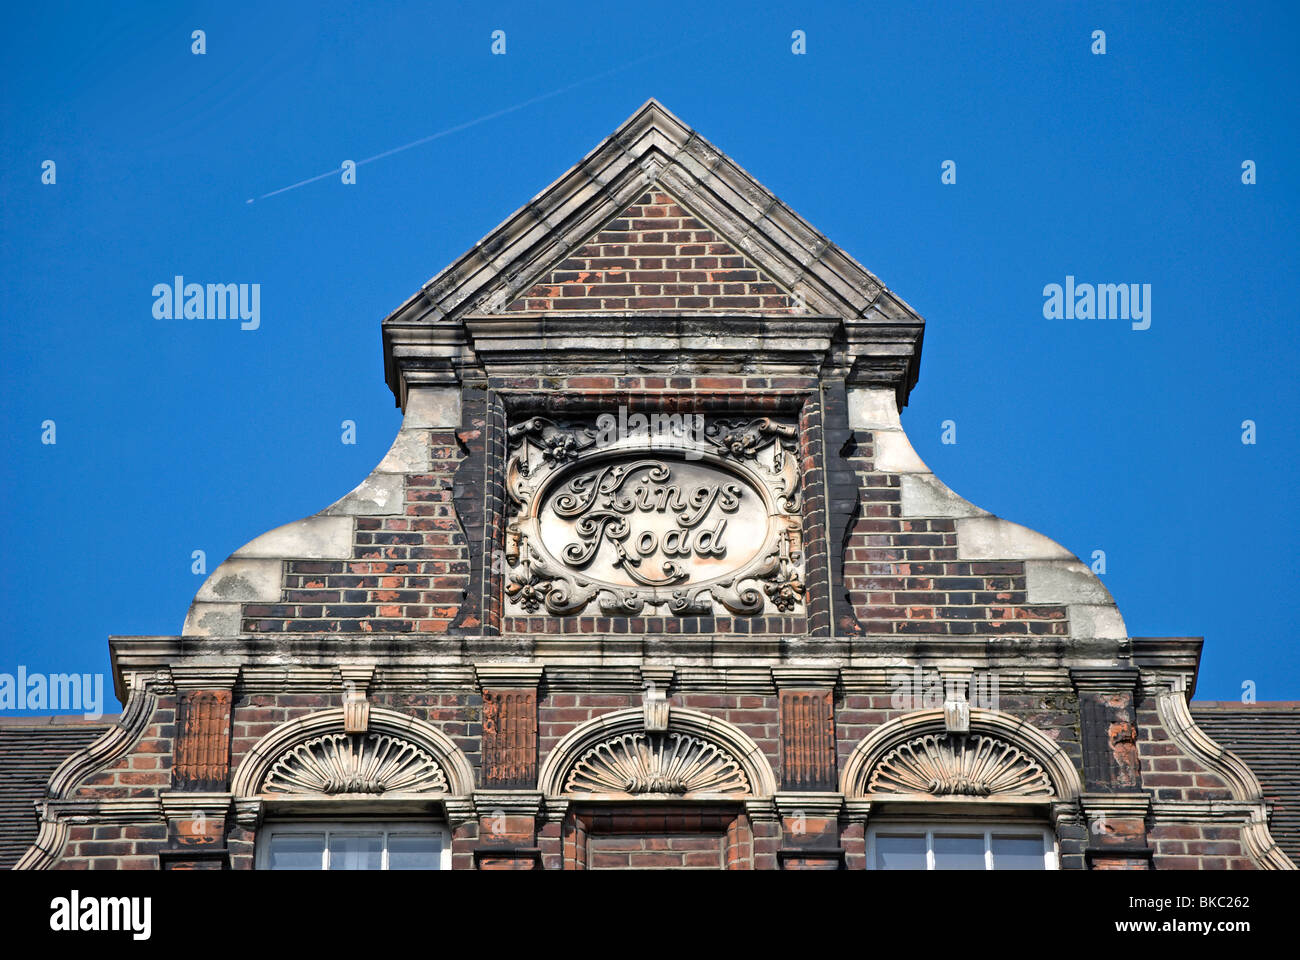 Caractéristiques de l'architecture en haut d'un bâtiment des années 1880 sur la King's Road, Chelsea, Londres, Angleterre Banque D'Images